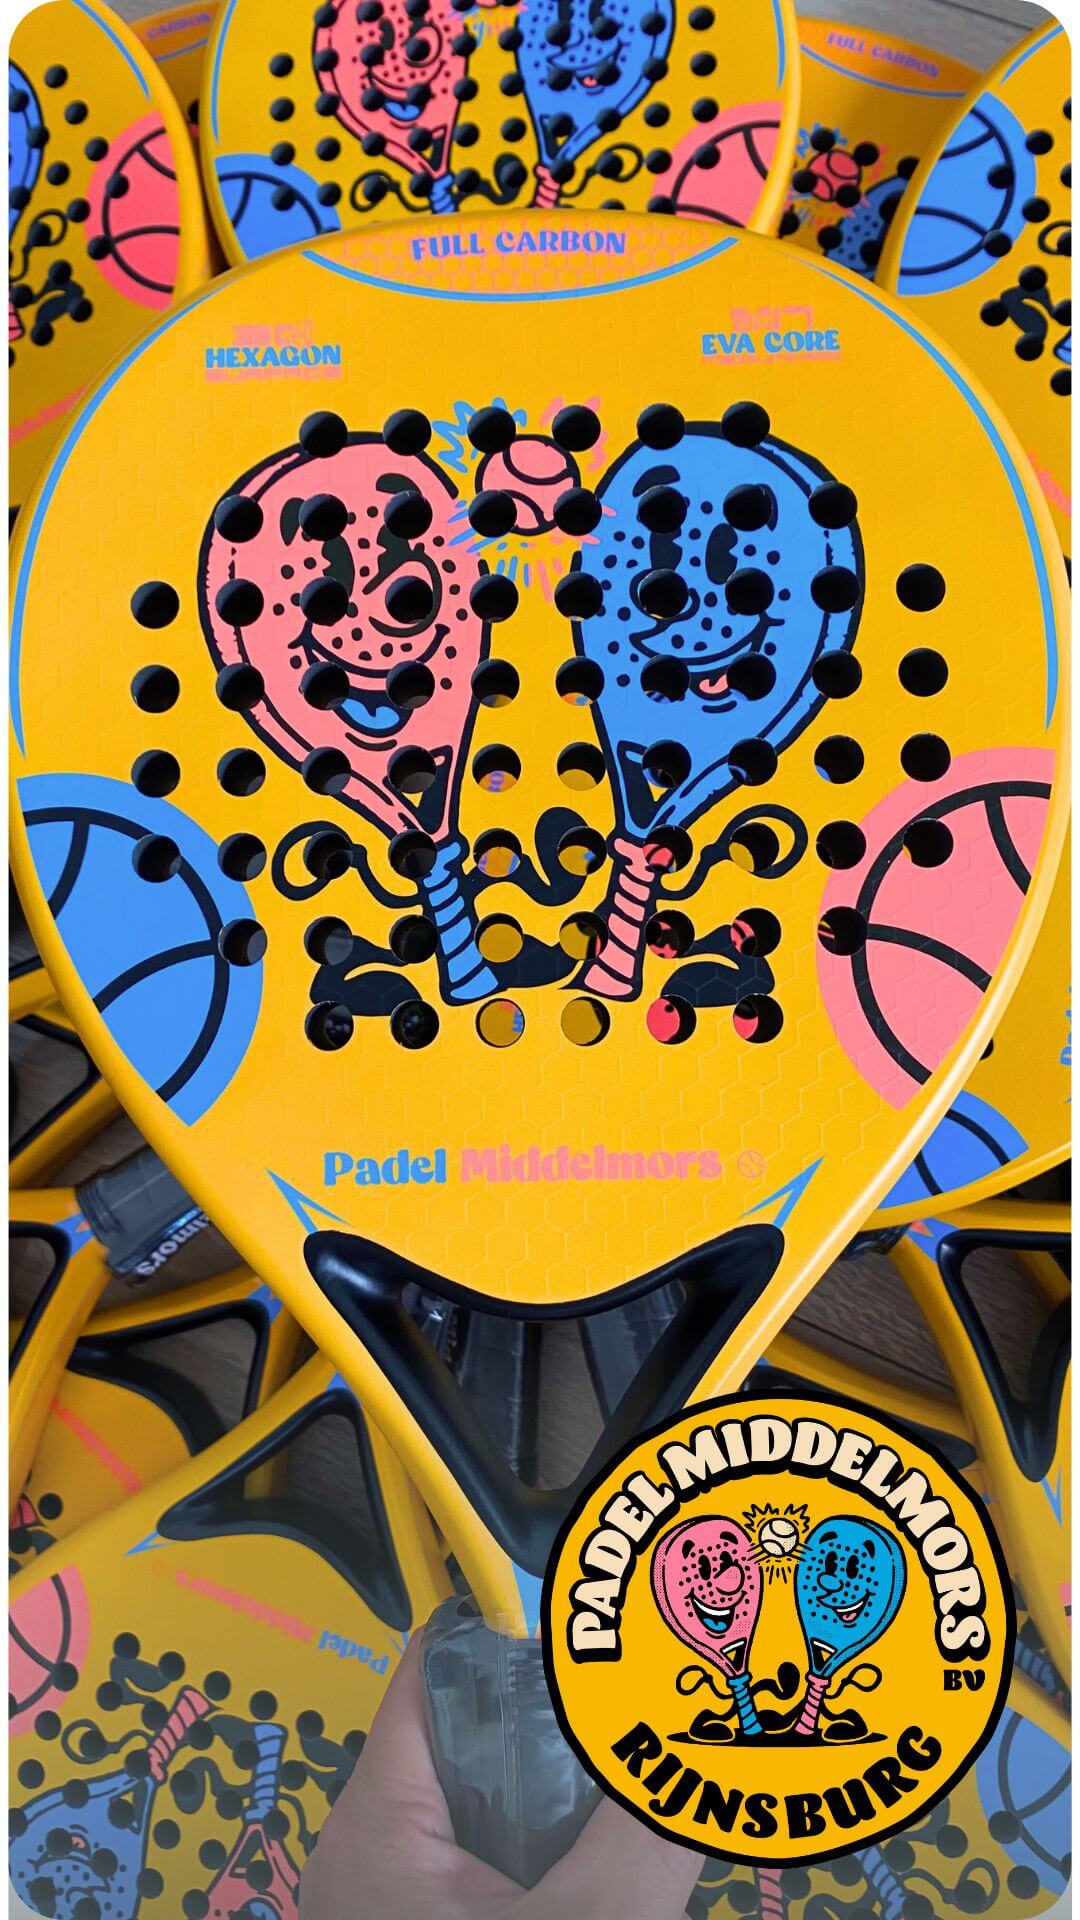 Custom padelracket voor Padel Middelmors Padelclub